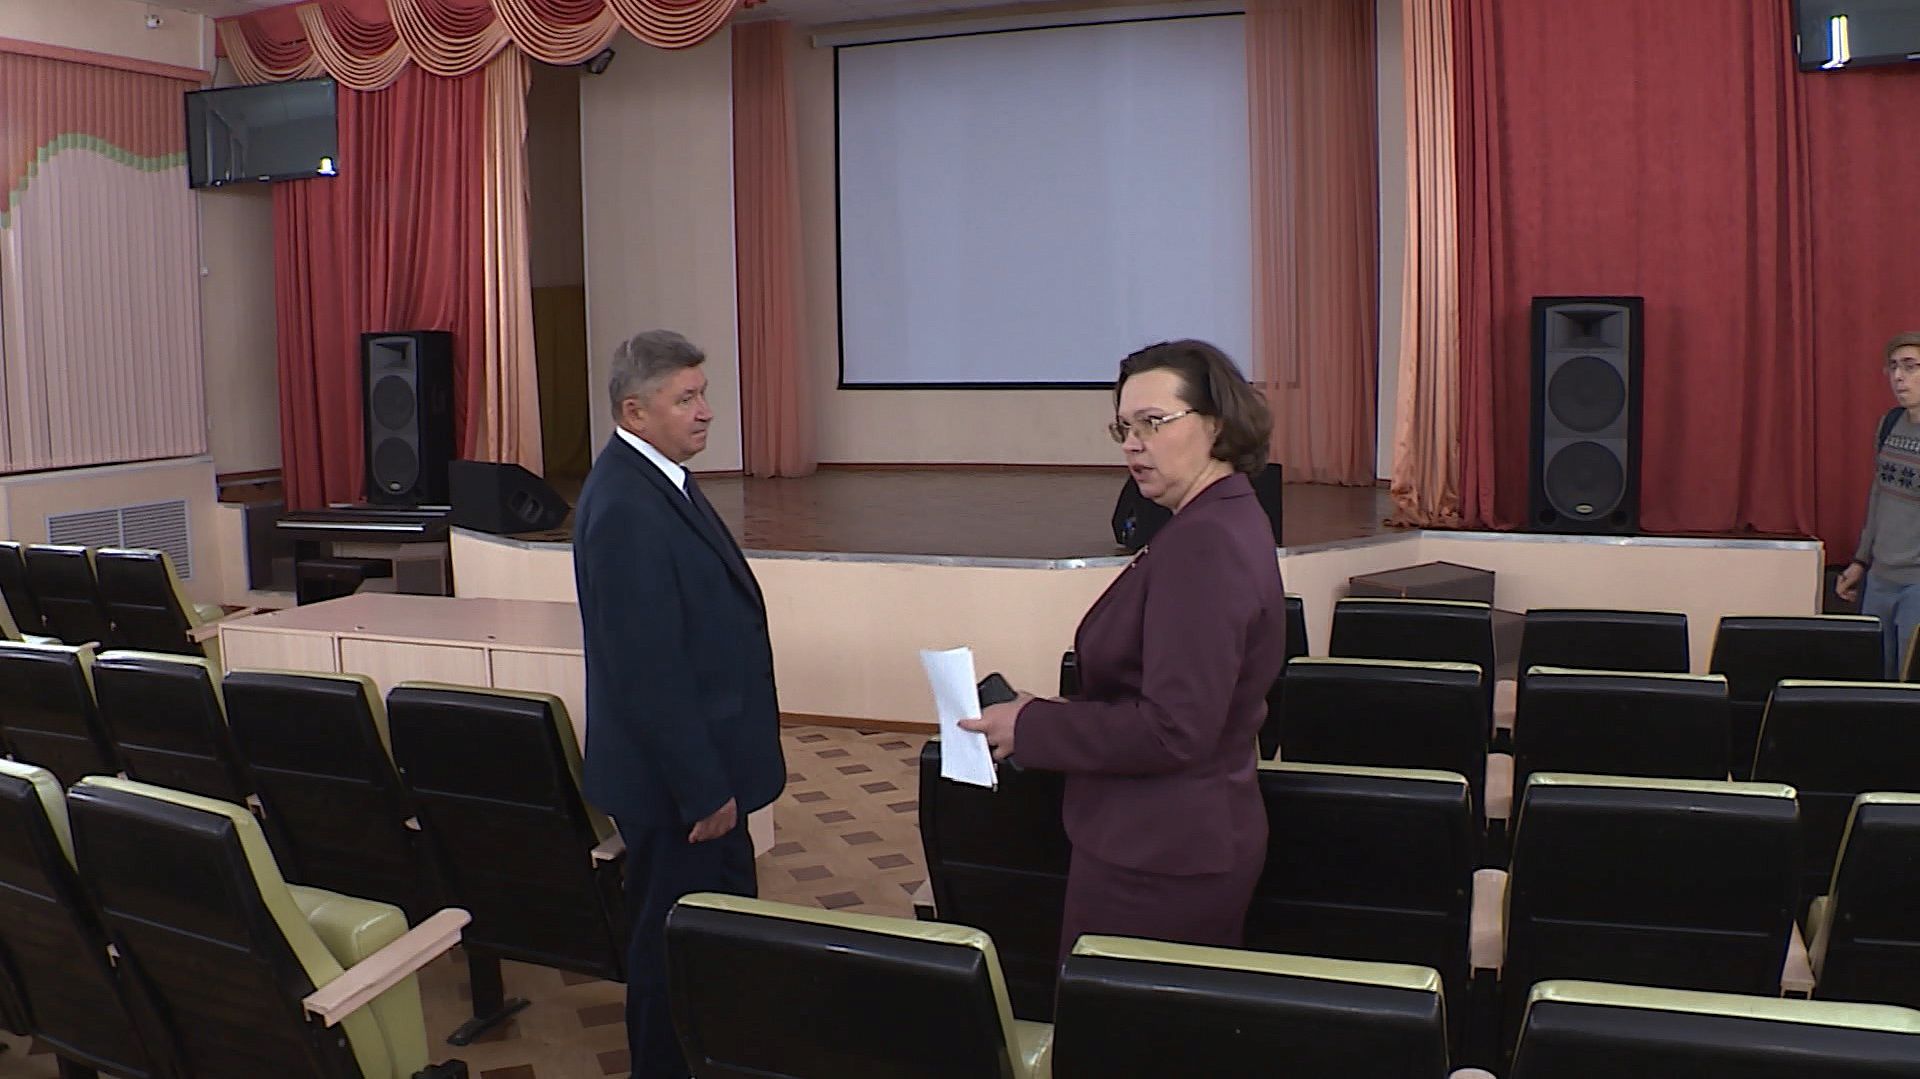 Костромская гимназия №25 инвестирует в «гражданскую грамотность» своих учеников 